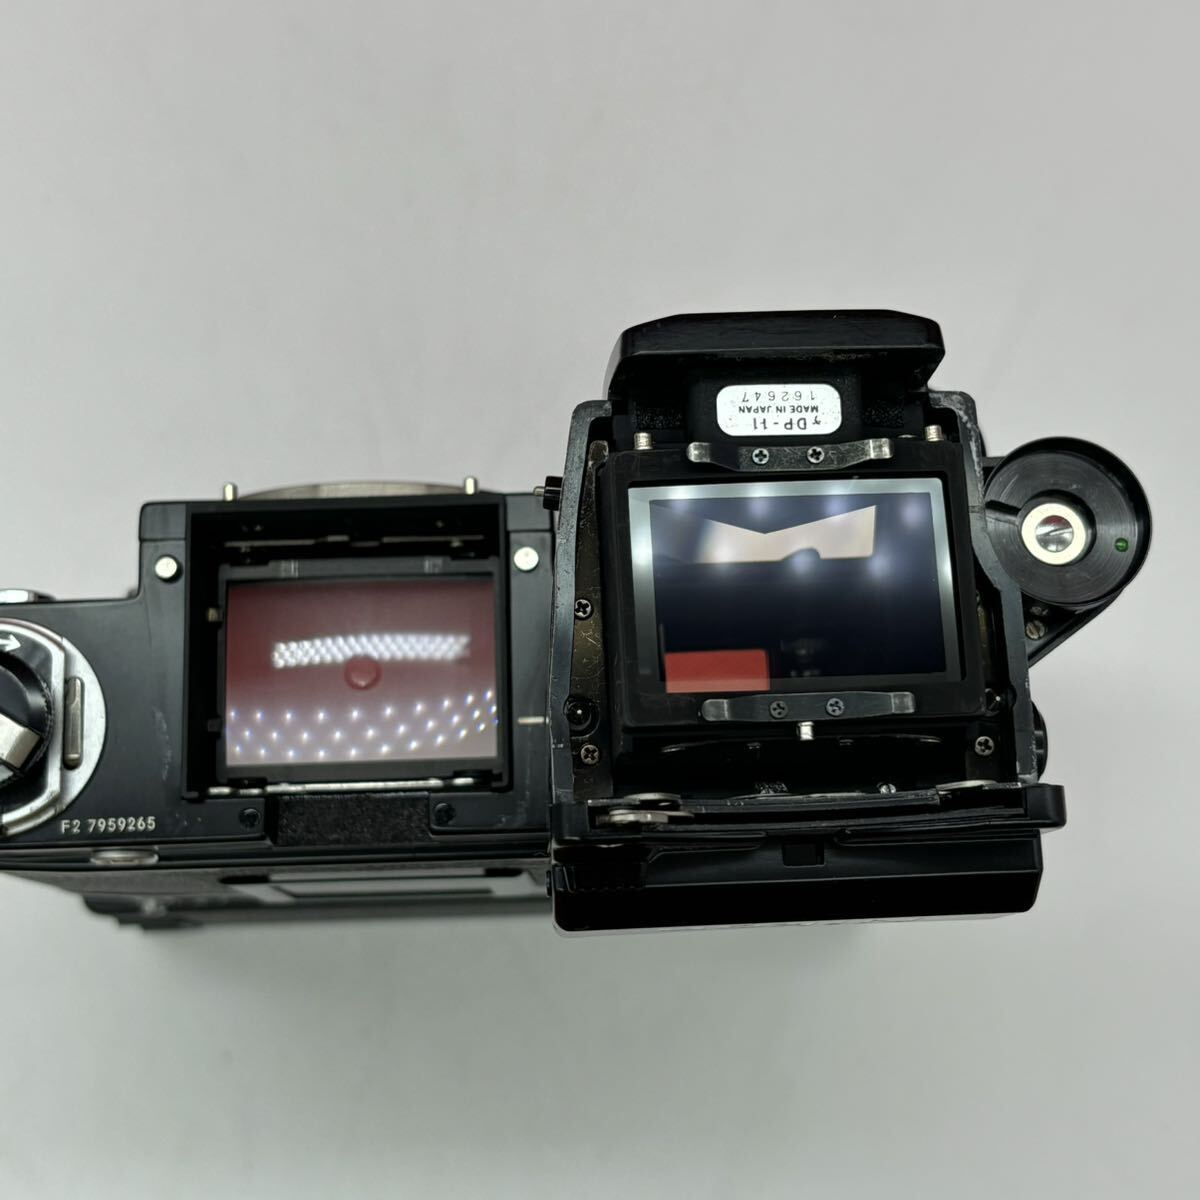 ◆ Nikon F2 フォトミック A DP-11 フィルムカメラ 一眼レフカメラ ボディ MD-3 MB-1 モータードライブ シャッター、露出計OK ニコン_画像10